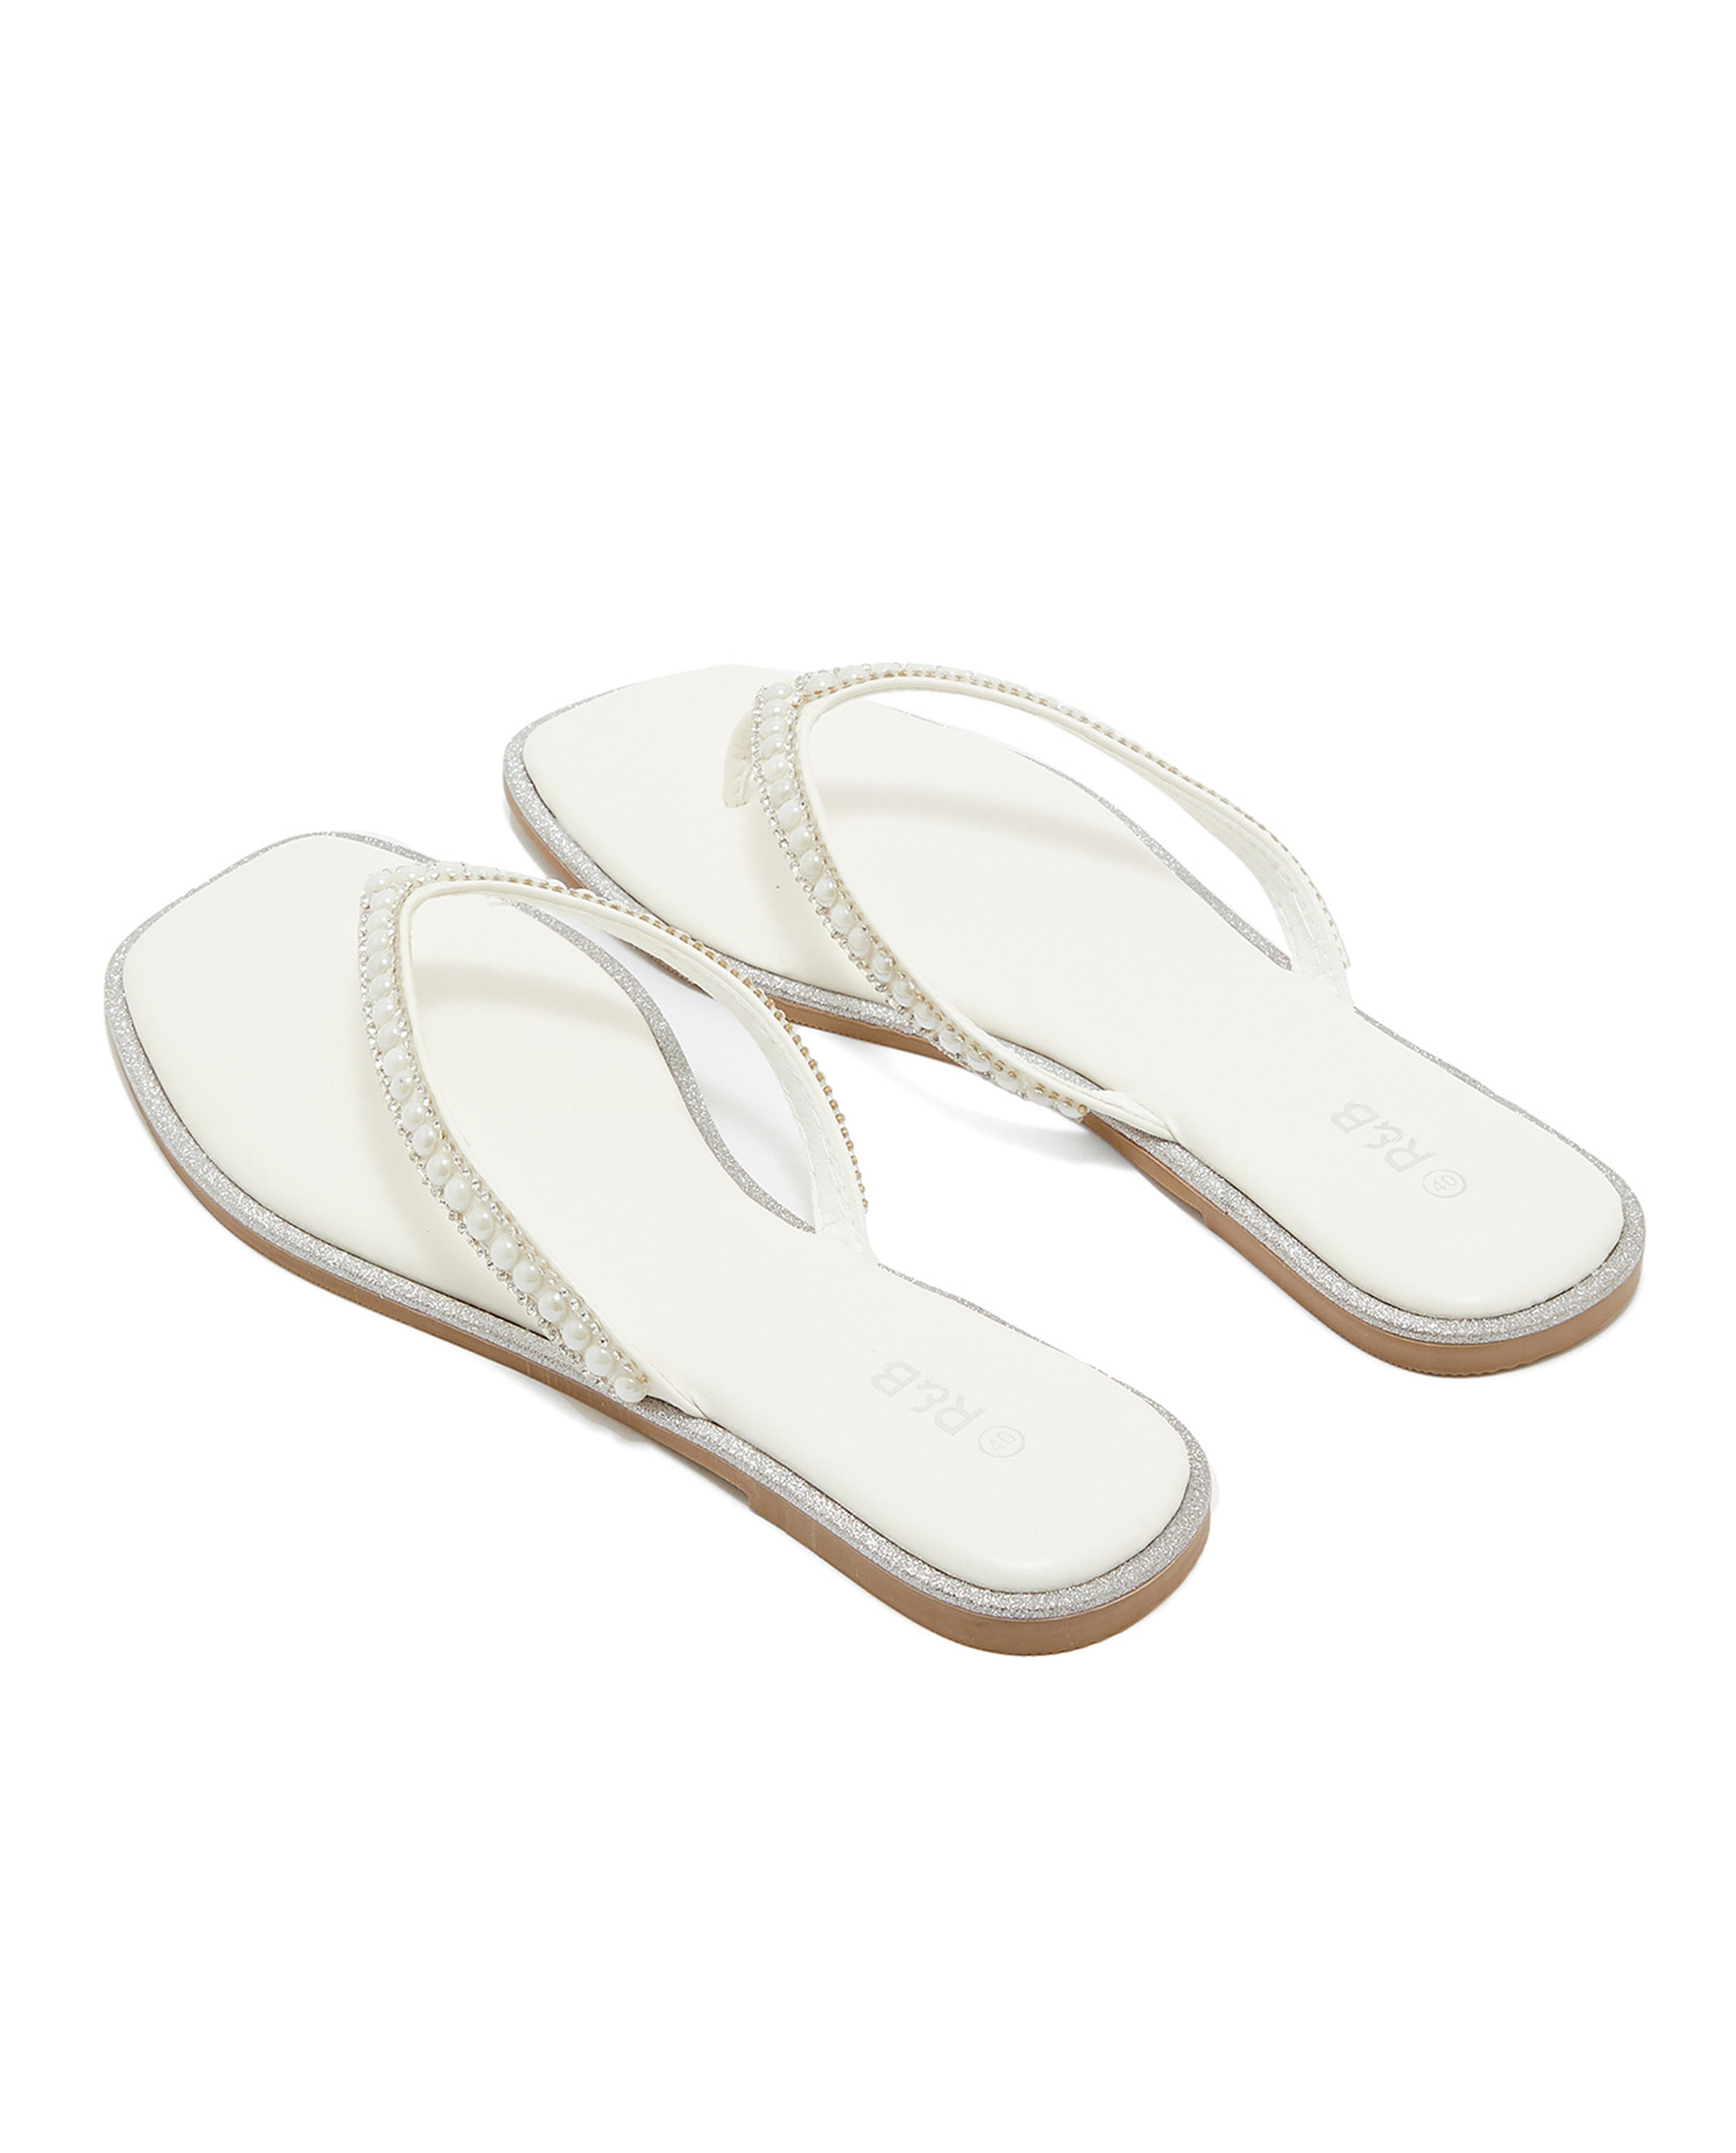 Pearl Strap Flat Sandals